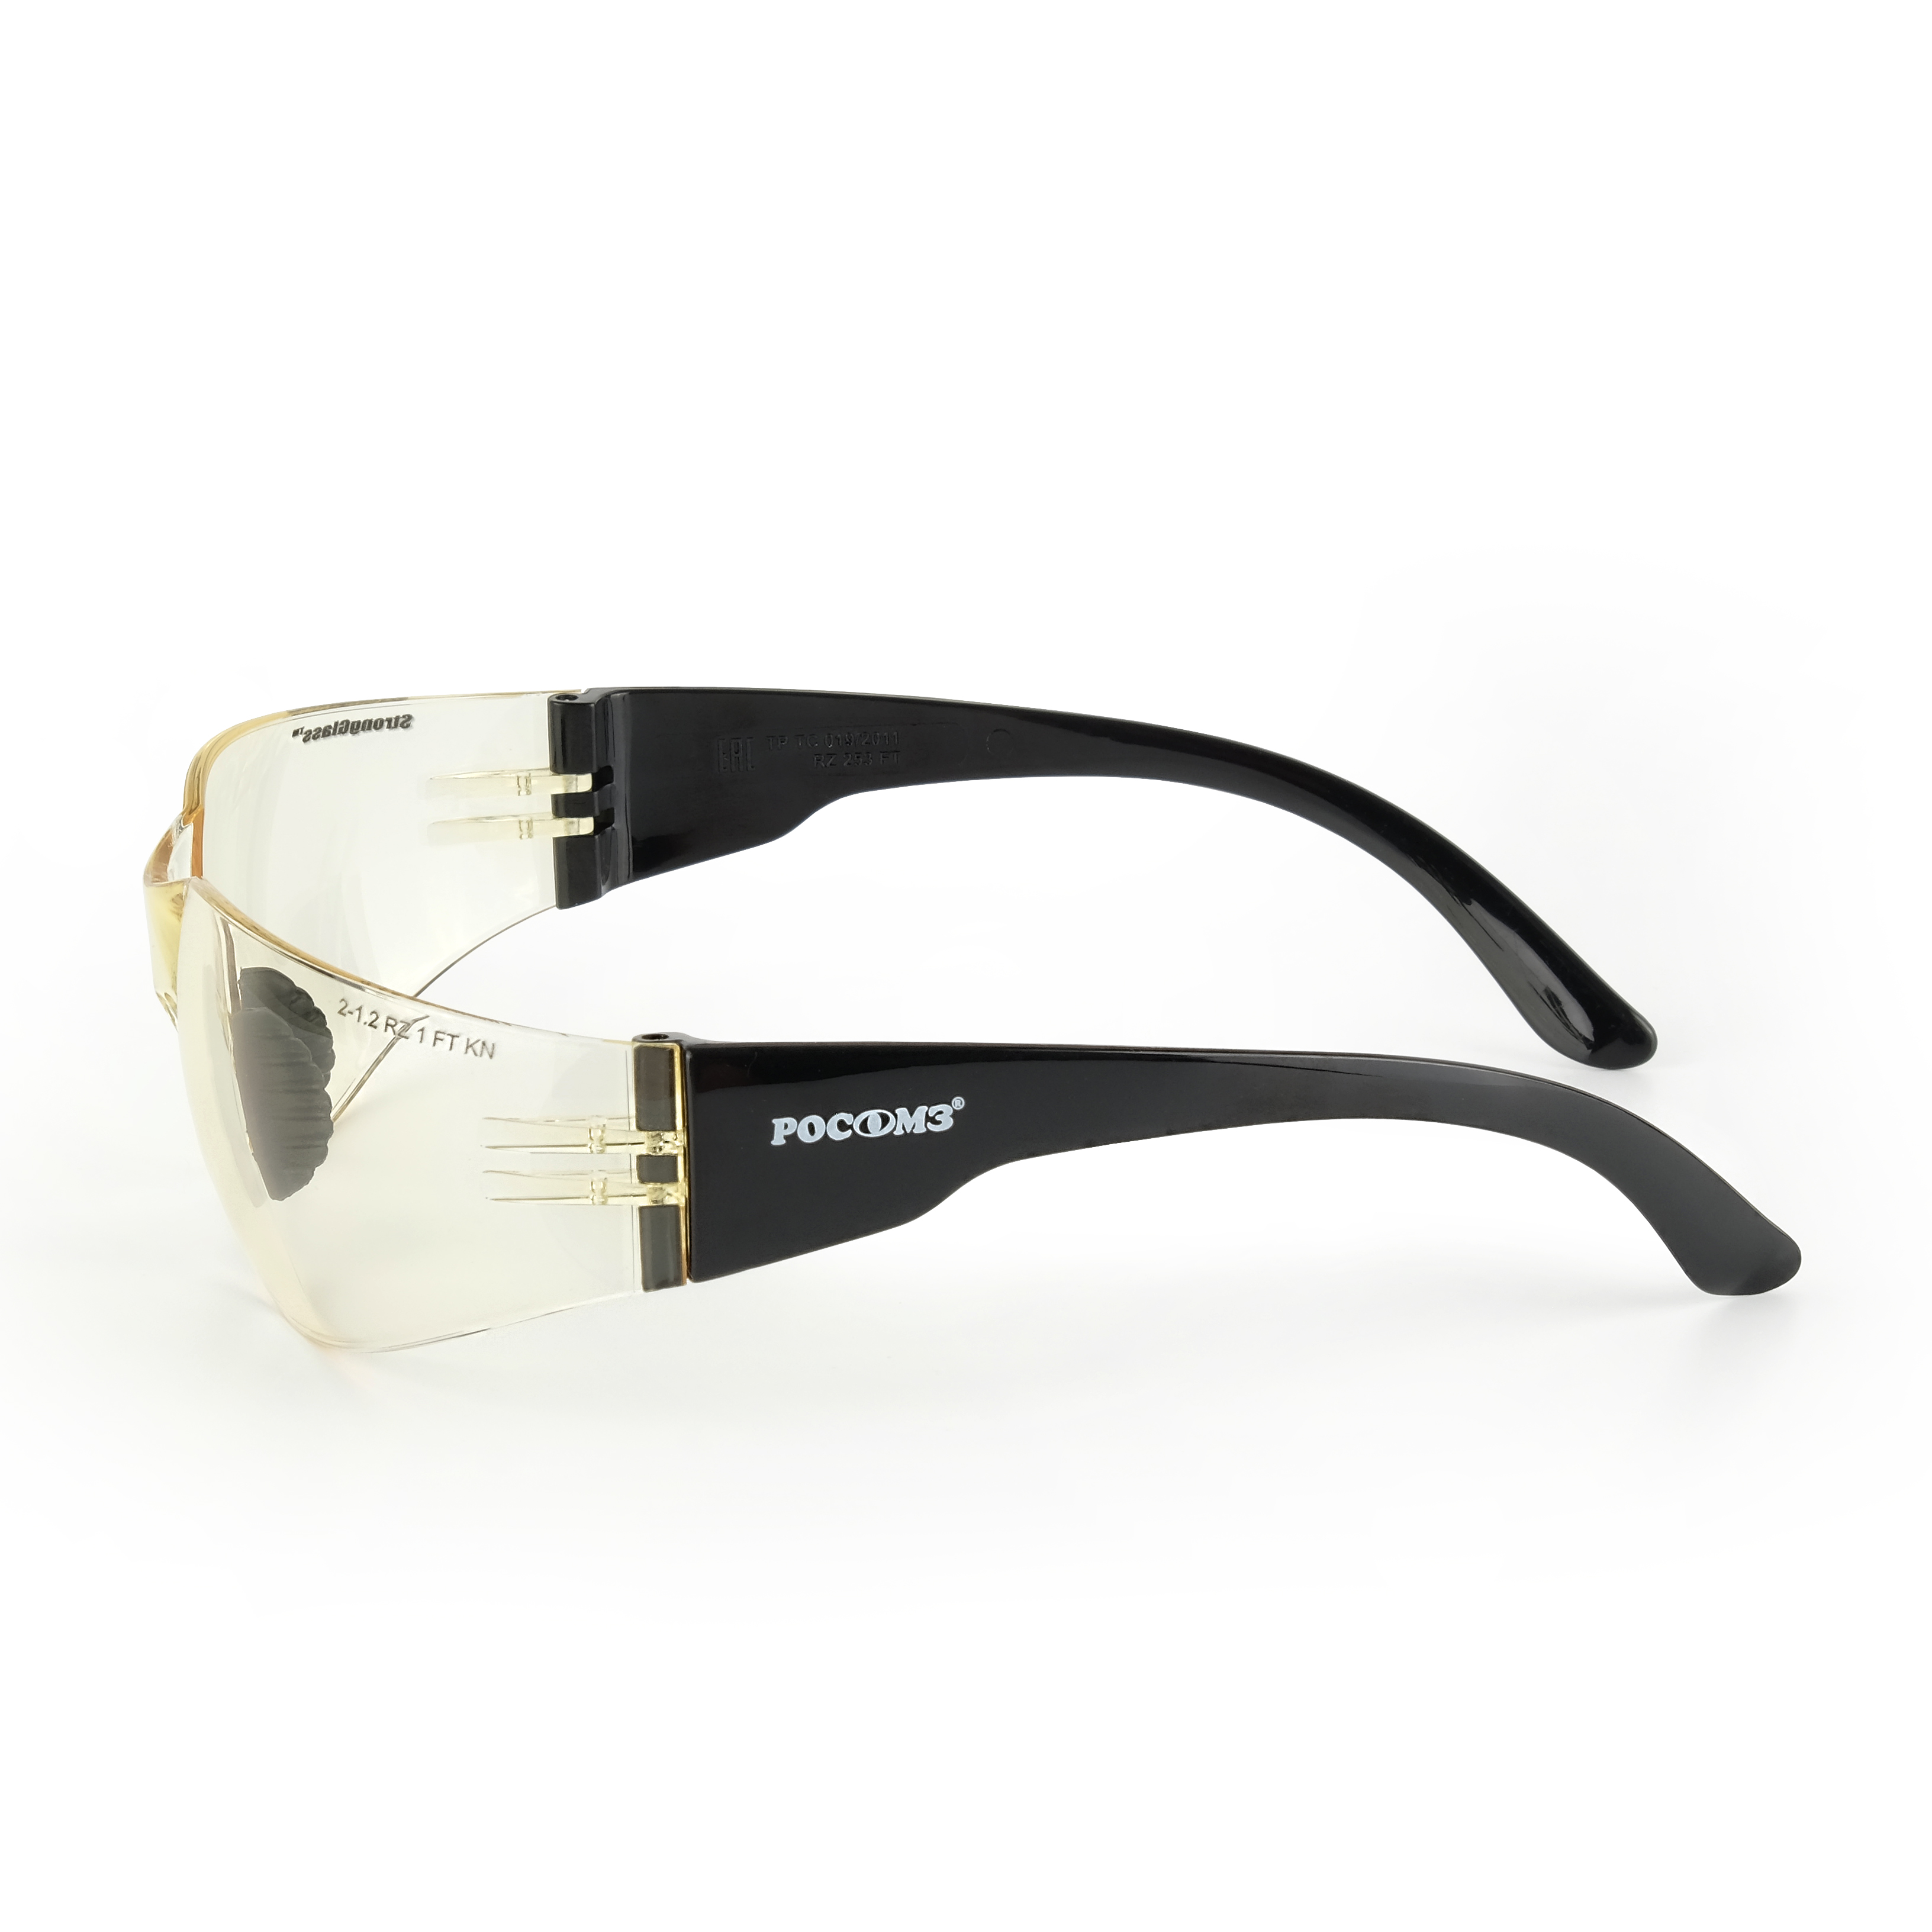 О15 HAMMER ACTIVЕ super (2-1,2 PC) очки защитные открытые с мягким носоупором